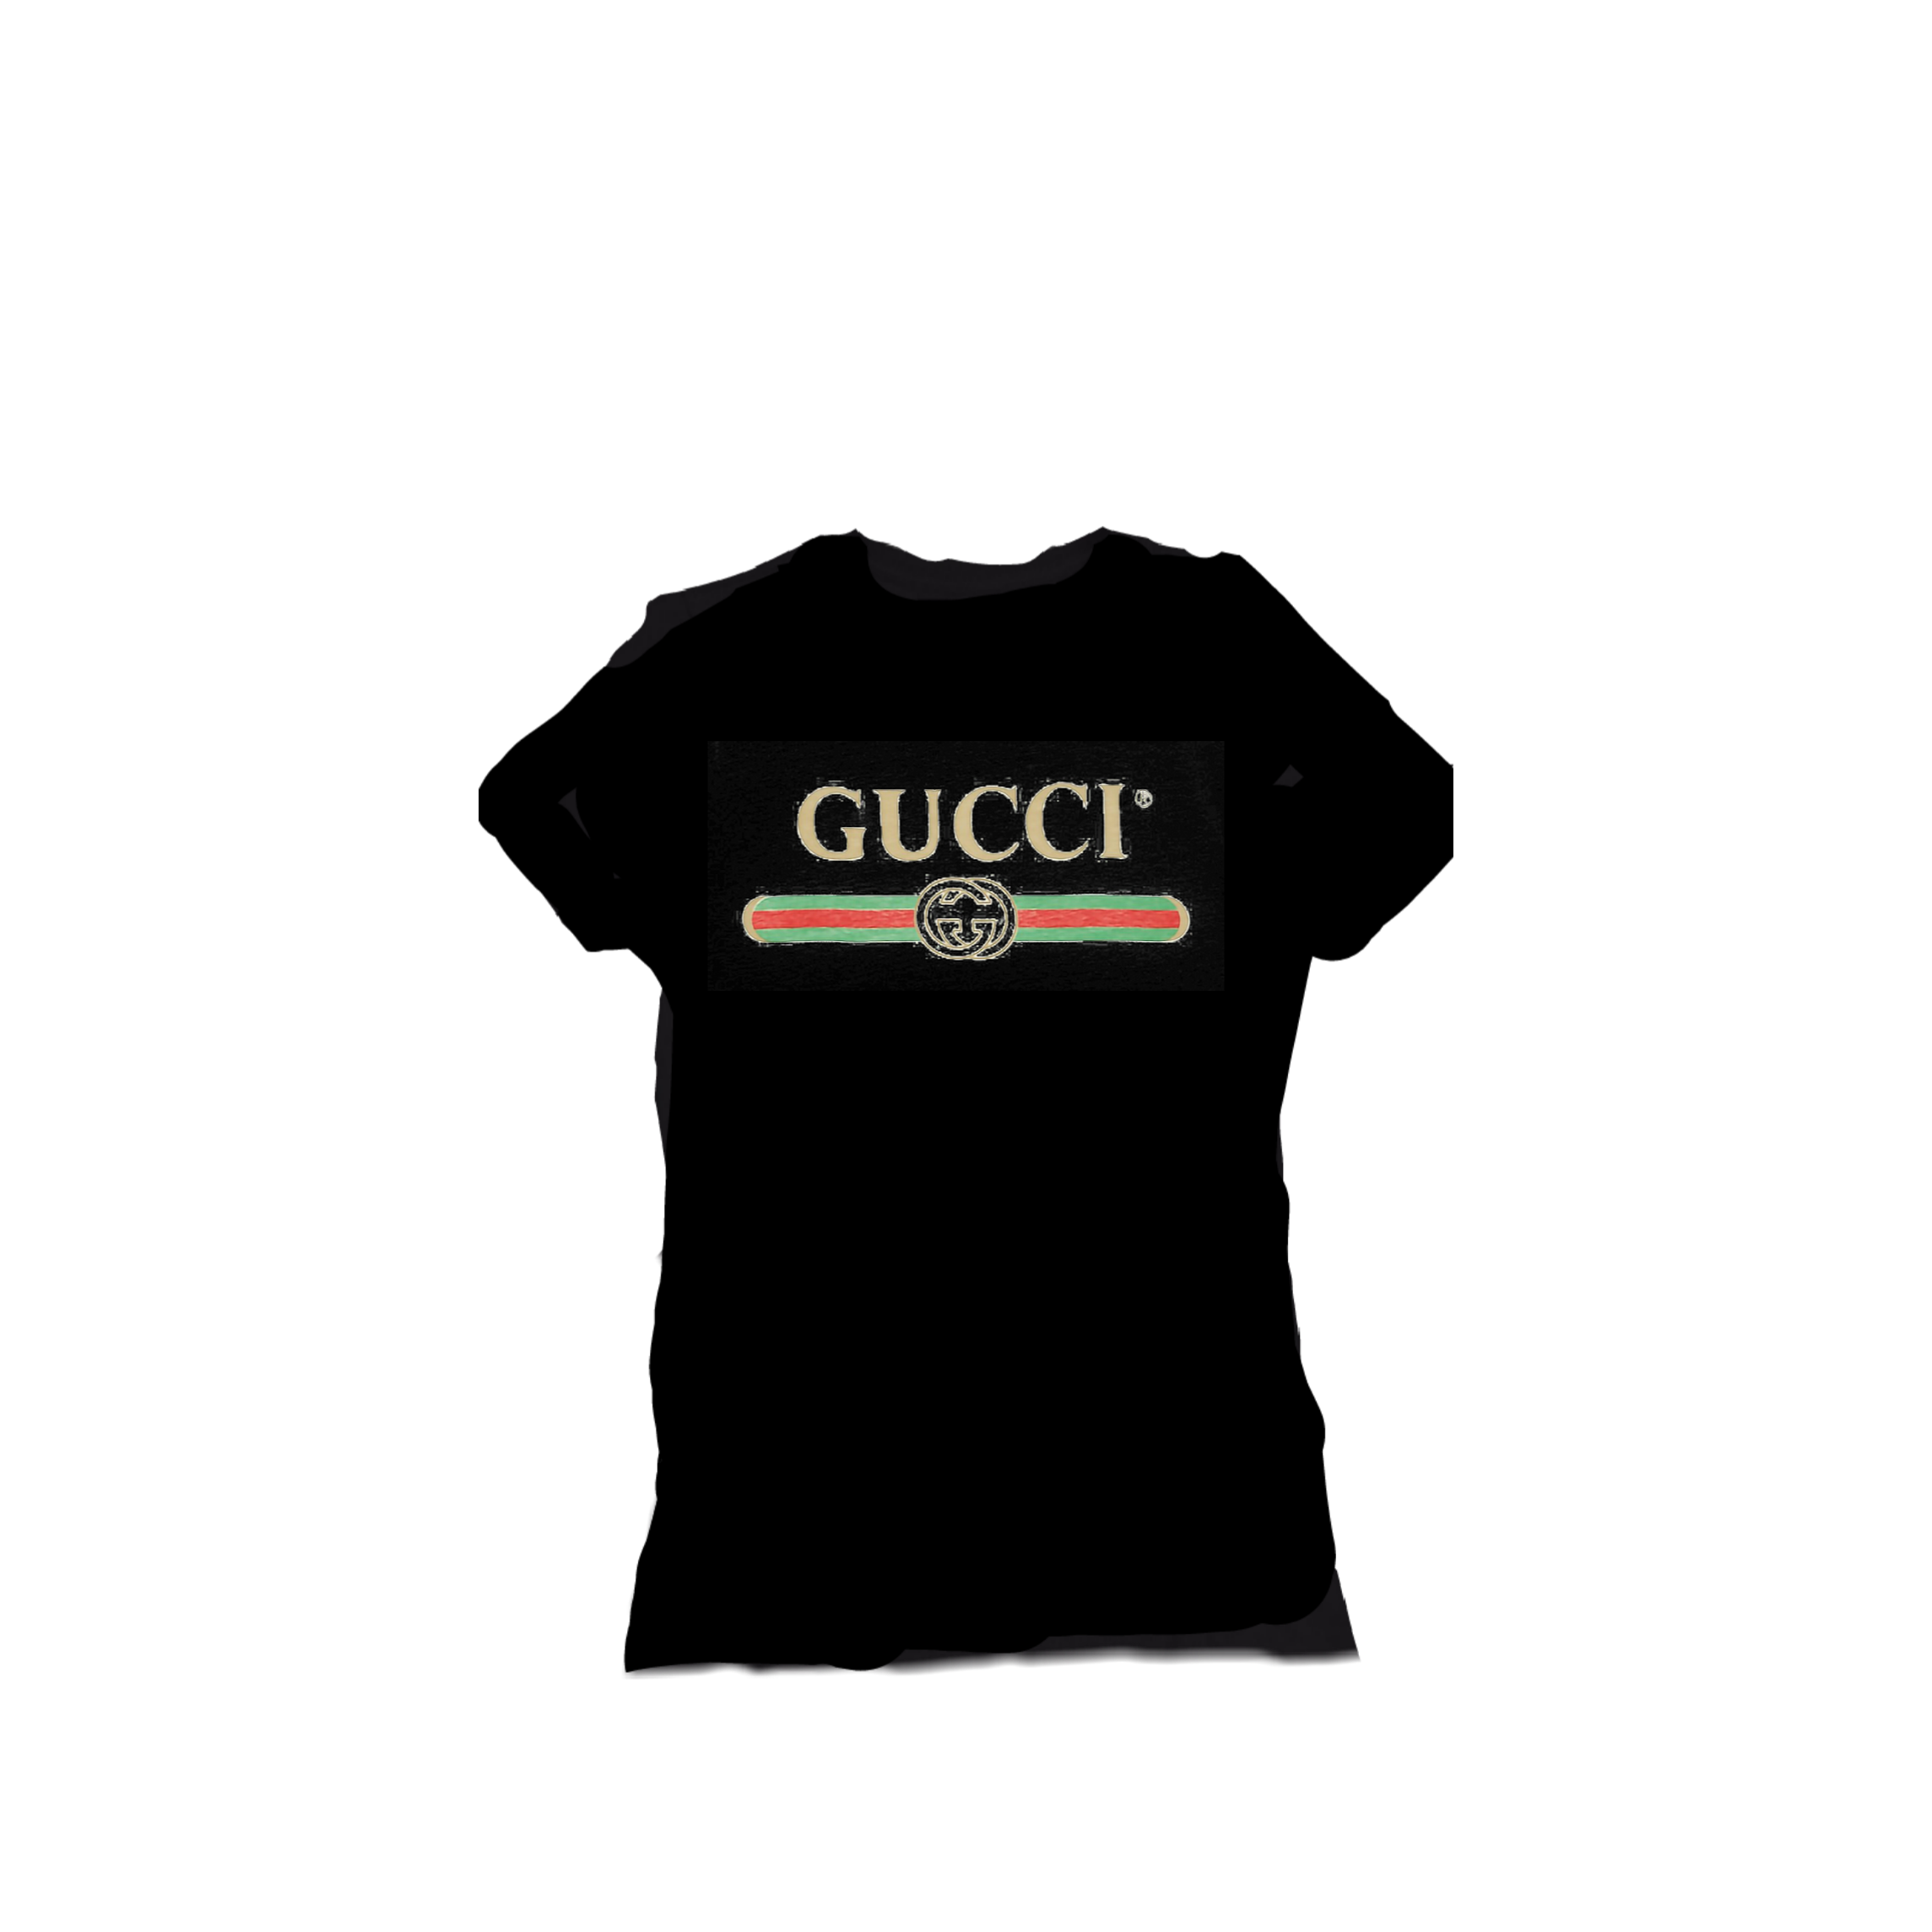 gucci shirt freetoedit #gucci #shirt sticker by @faze_kingy